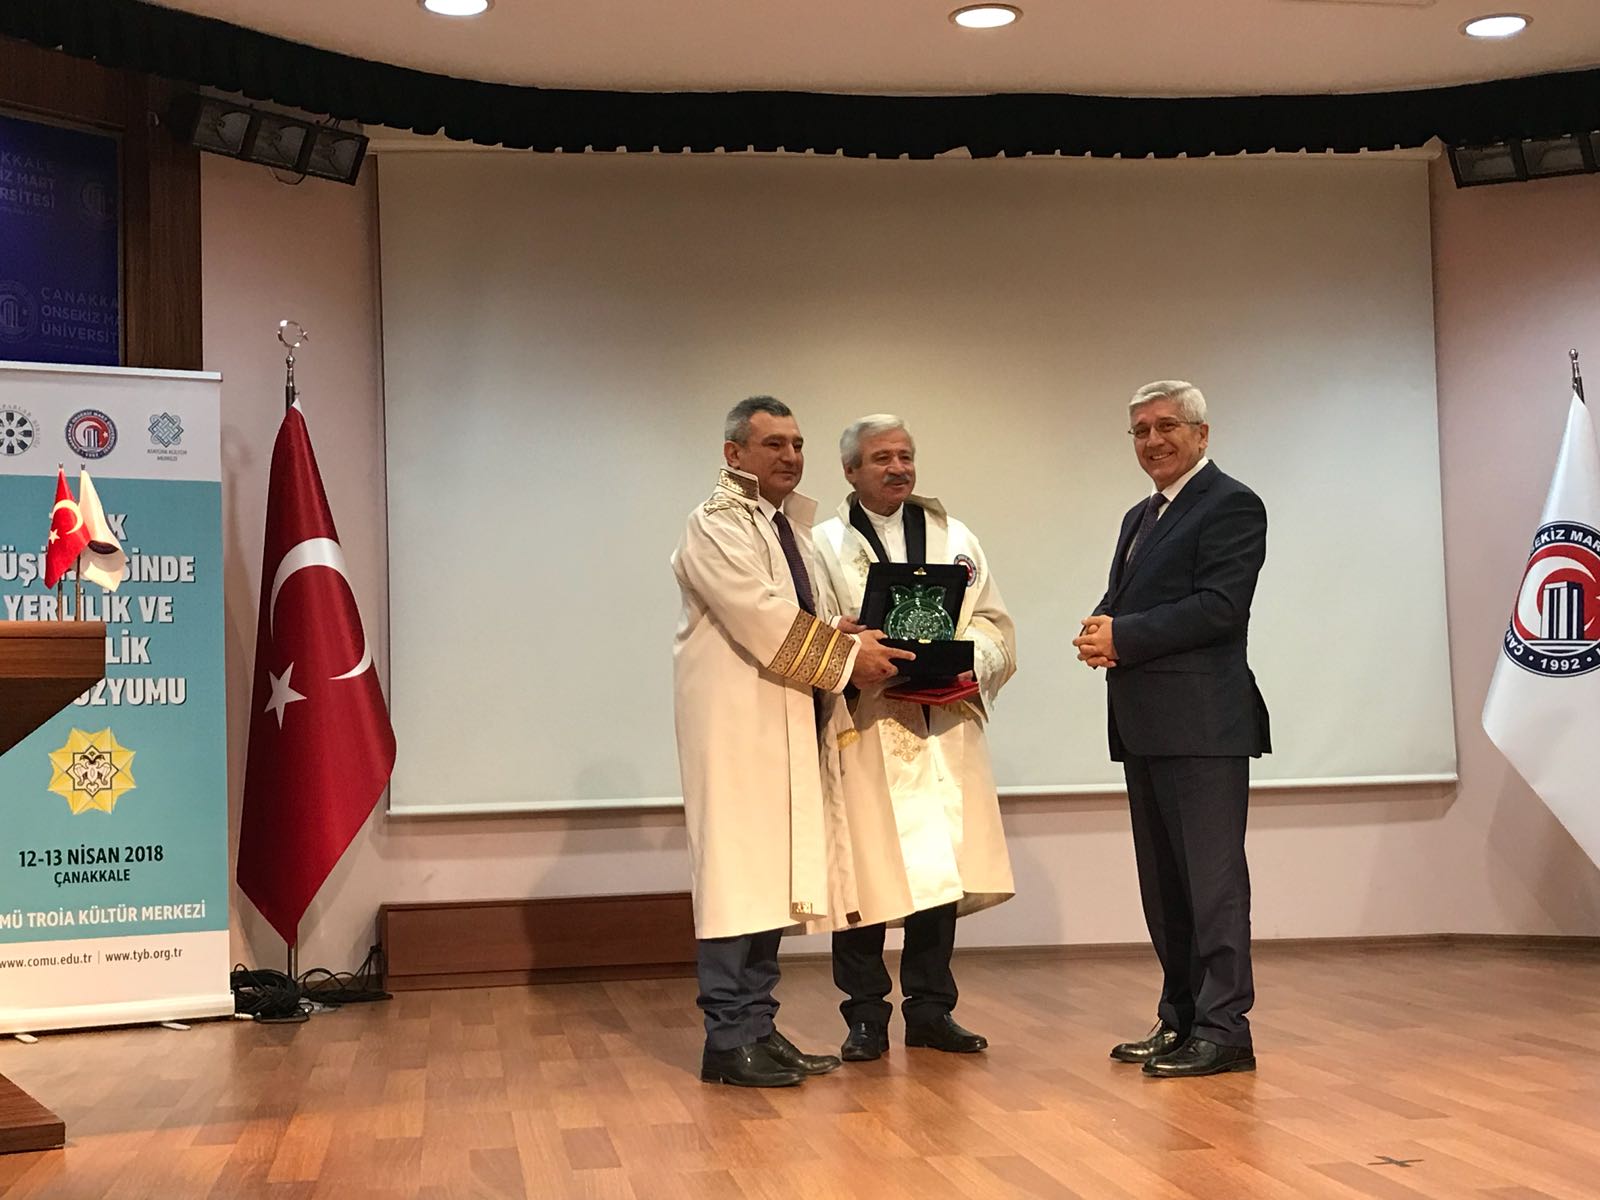 Çanakkale Onsekiz Mart  Üniversitesi’nden D. Mehmet Doğan’a Fahri Doktora